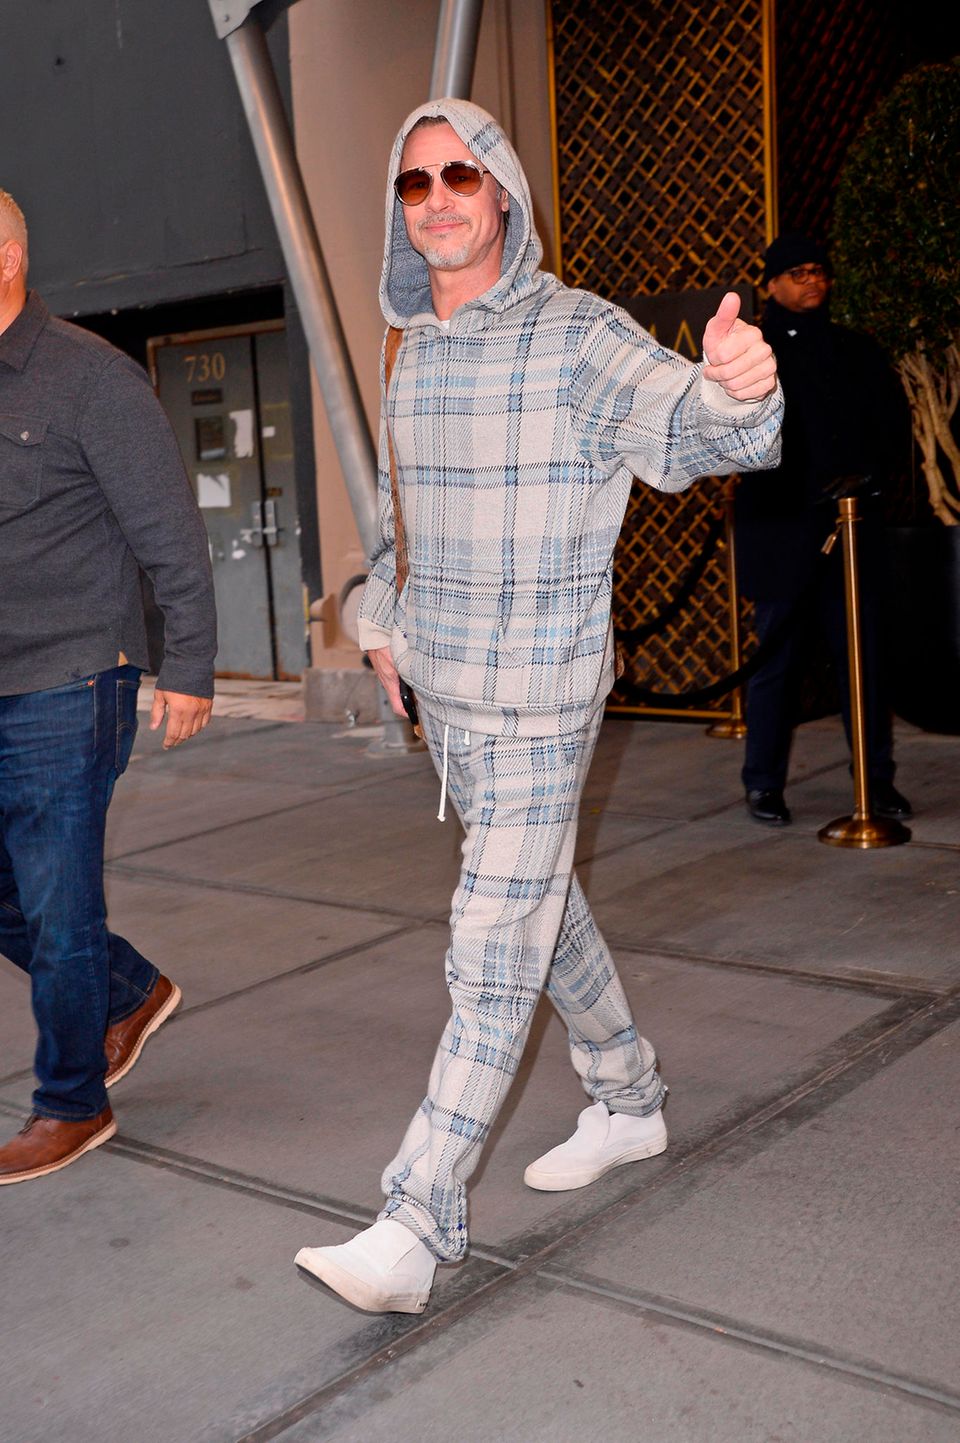 Daumen hoch, für so viel Gelassenheit! Beim Verlassen seines Hotels in New York City beweist Brad Pitt, dass er es auch gerne mal entspannter angehen lässt. Anstatt auf Glanz und Glamour setzt der Schauspieler lieber auf einen karierten Hoodie und die passende Jogginghose. Um dem sportlich-legeren Ton seines Outfits gerecht zu werden, dürfen Turnschuhe nicht fehlen. 